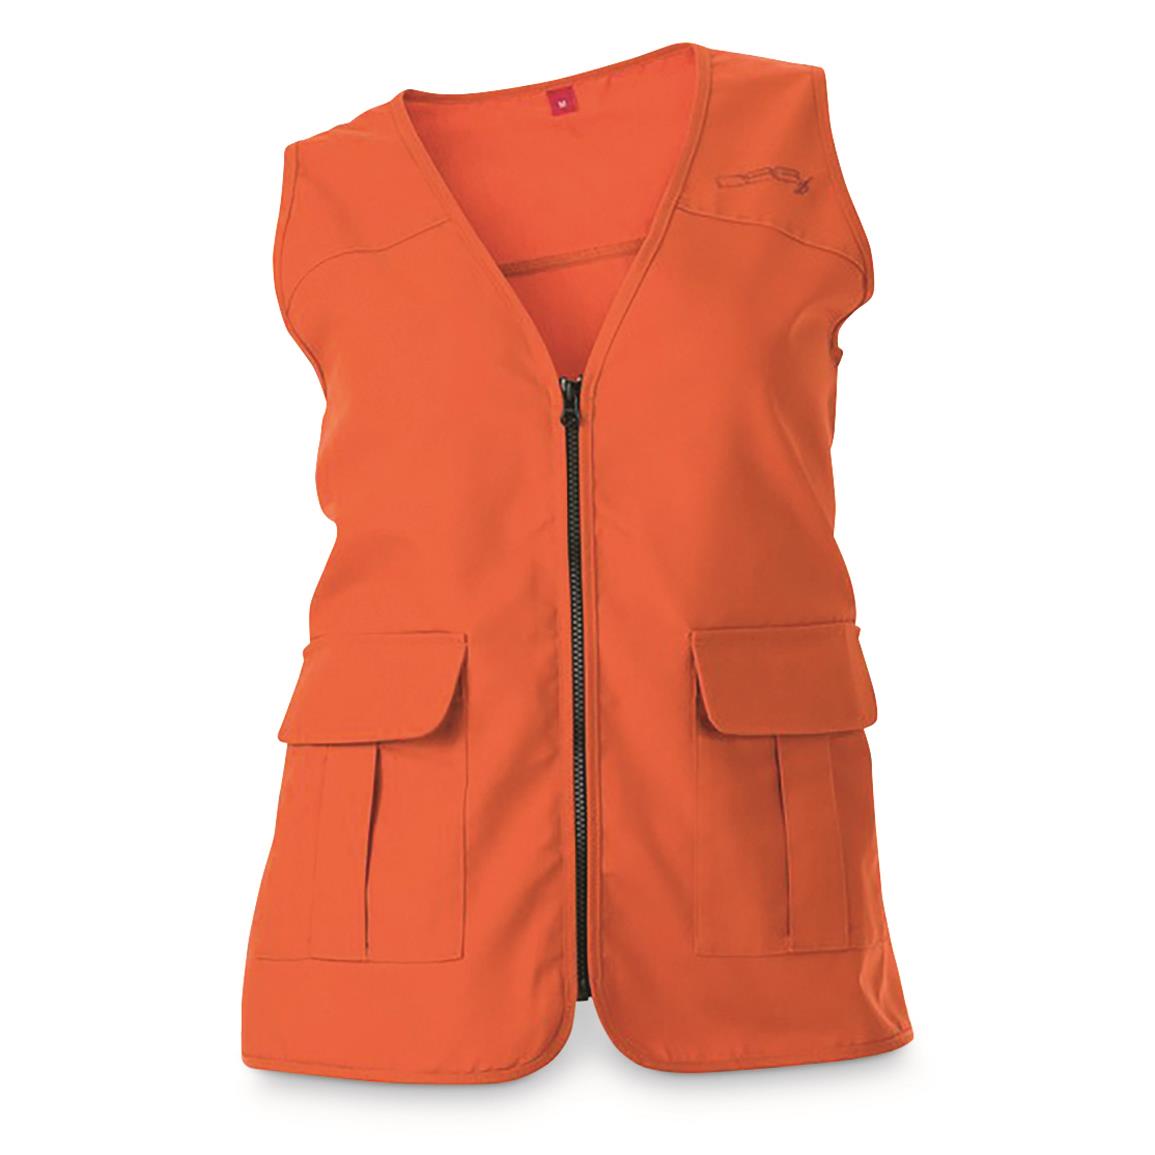 DSG Outerwear Women's Blaze Hunting Vest, Blaze Orange